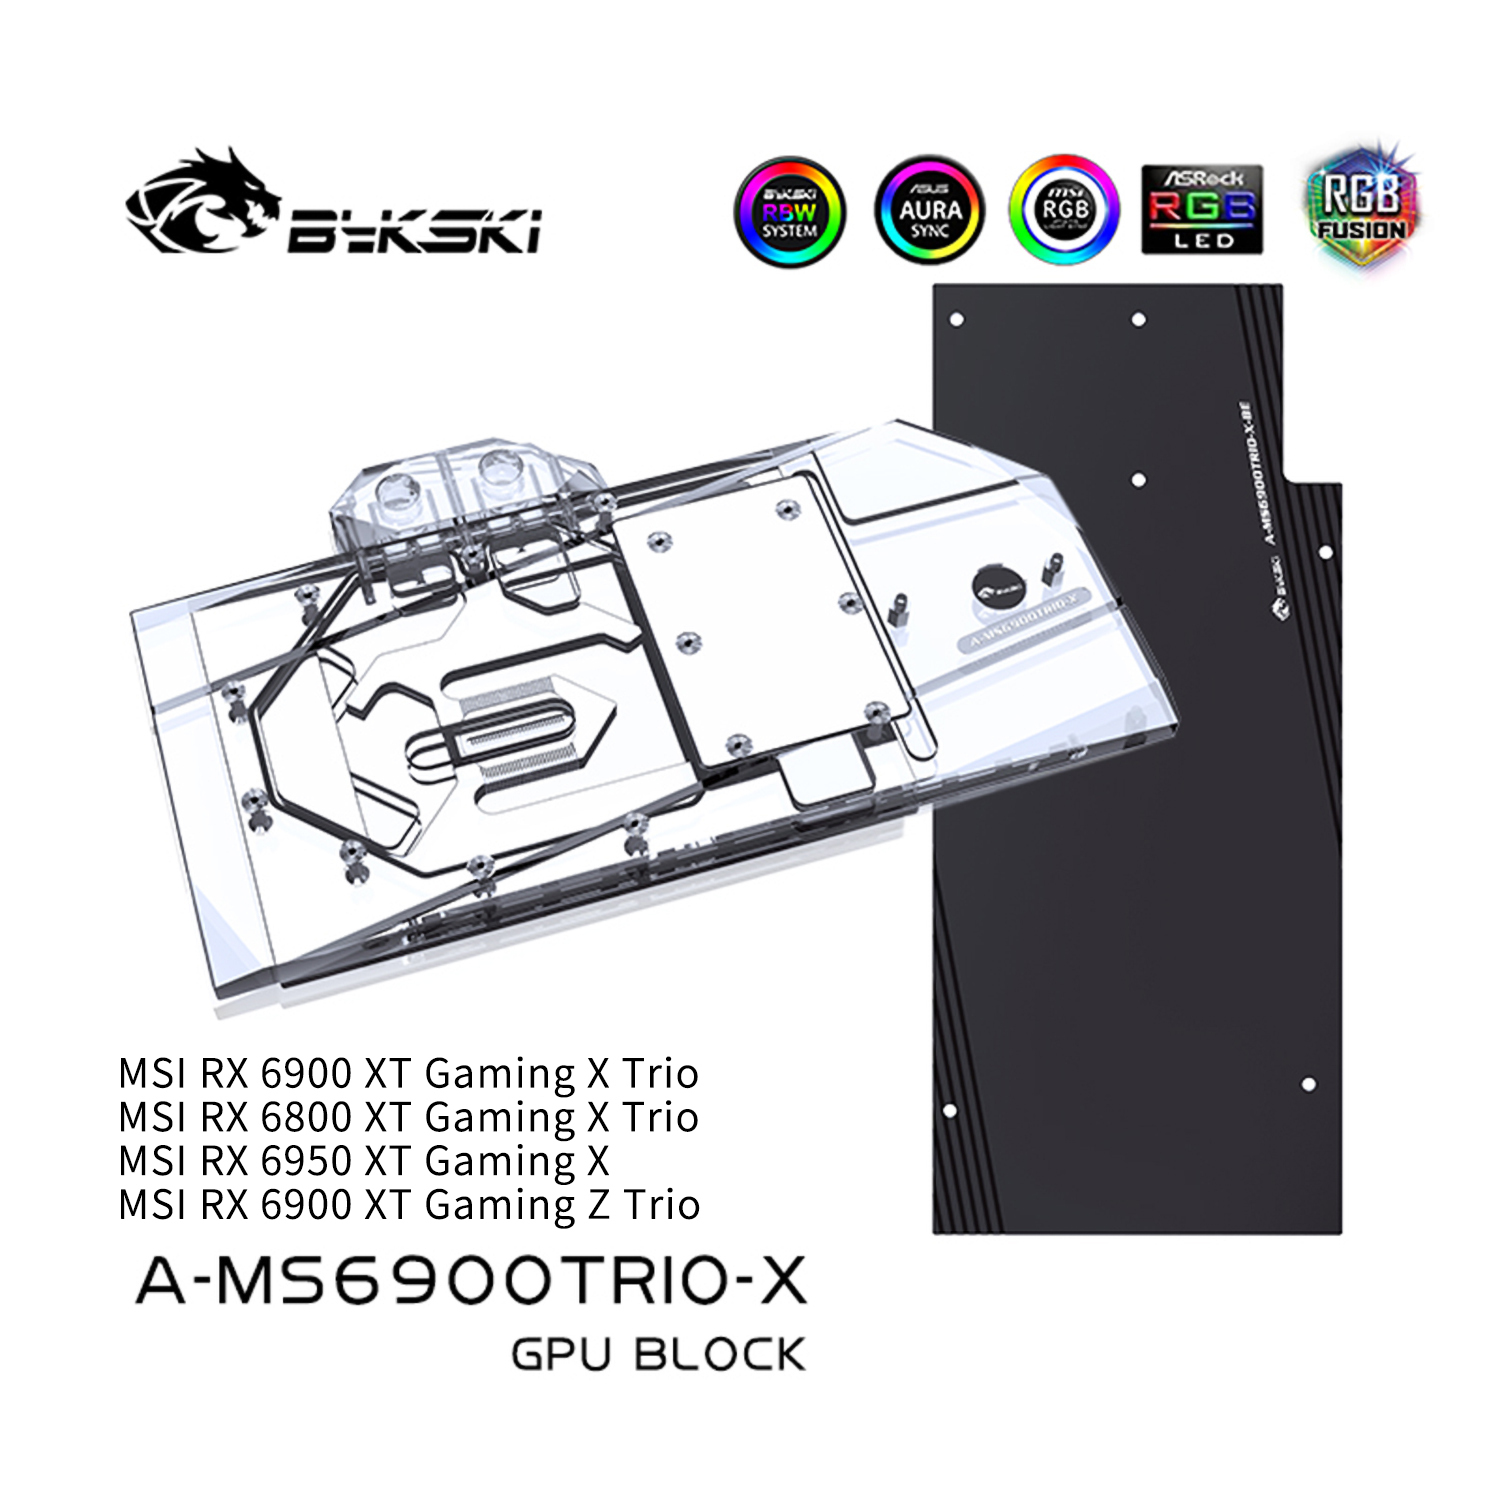 Bykski 6900XT 6800XT For Radeon RX 6800/6900 XT Nitro+, GPU Water Cooling  Block, AMD Graphics Card Liquid Cooler, A-SP6900XT-X - AliExpress